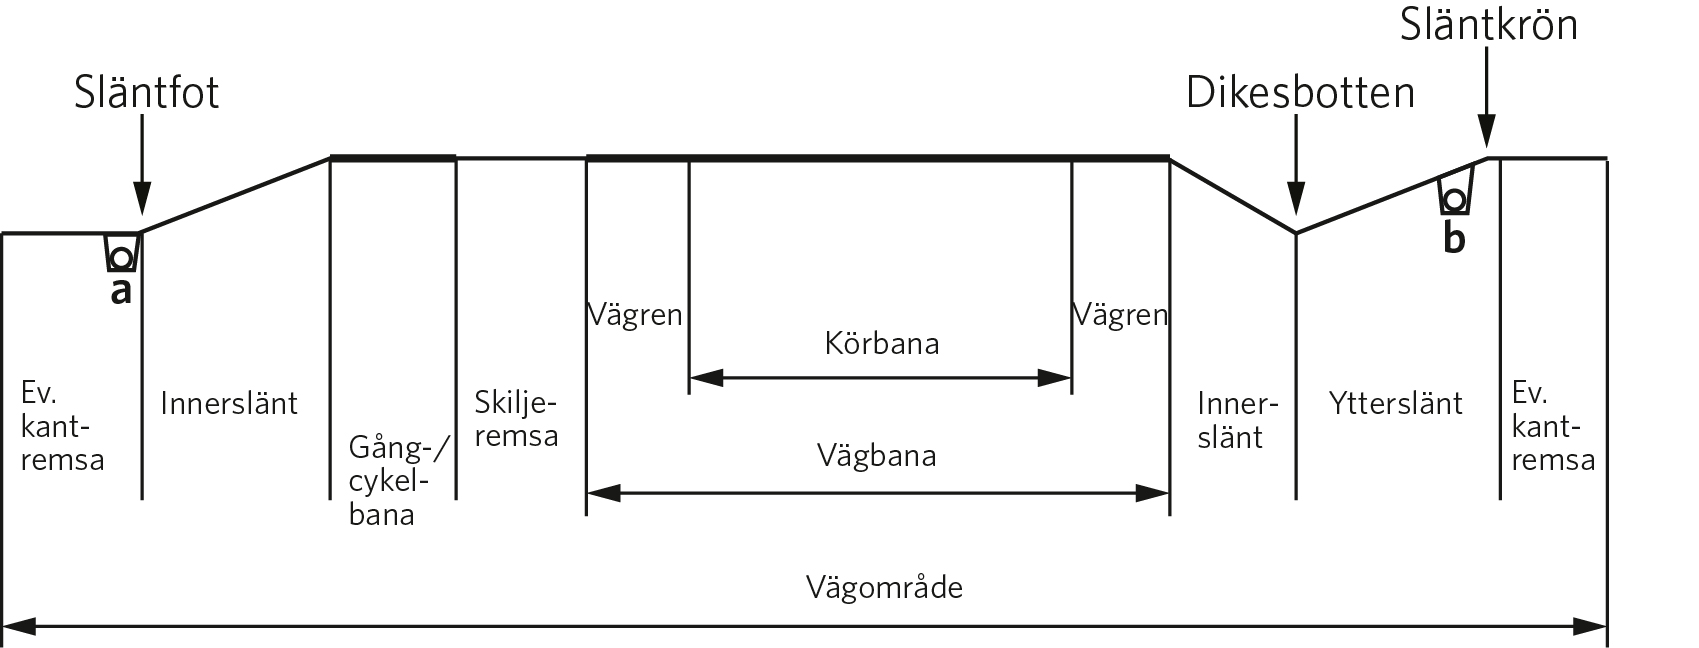 Figur av länsgående ledning; körbana, vägbana, skiljeremsa, innerslänt, ytterslänt, släntkrön, släntfot och dikesbotten